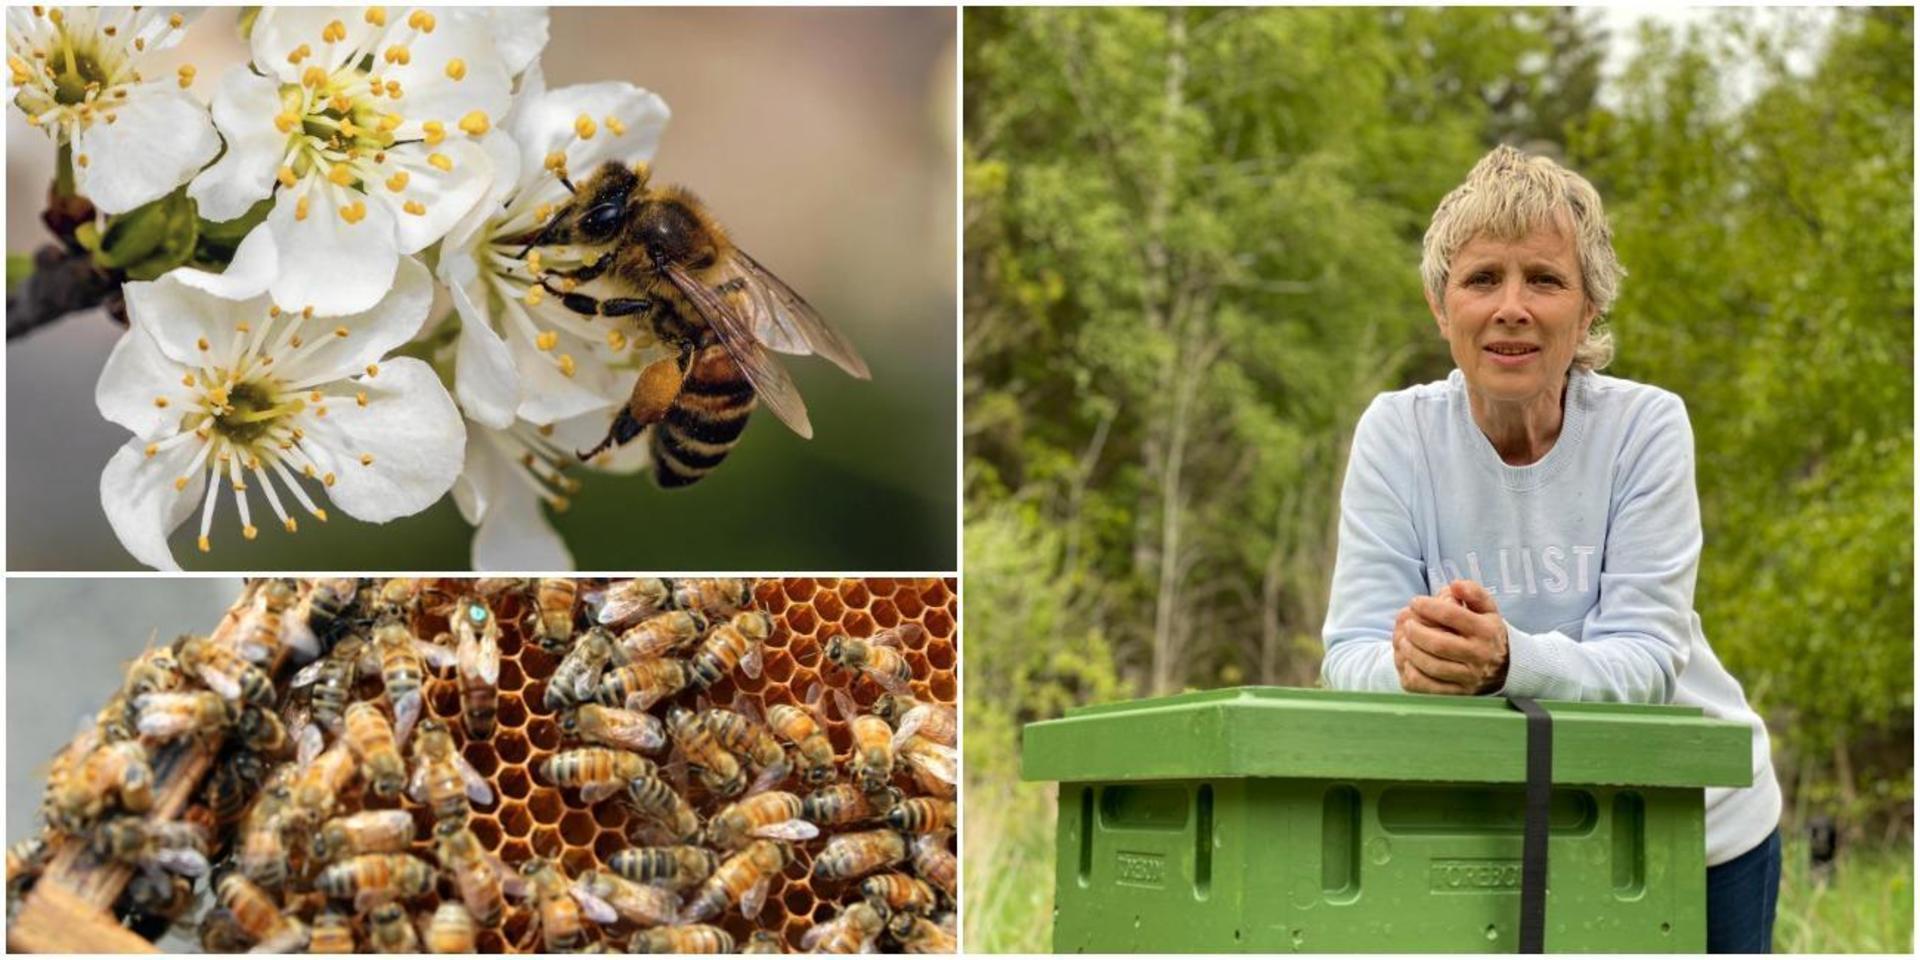 Lillemor Bulukin, ordförande Södra Inlands biodlareförening väntar på att värmen ska komma så att bina kan börja arbeta ordentligt.